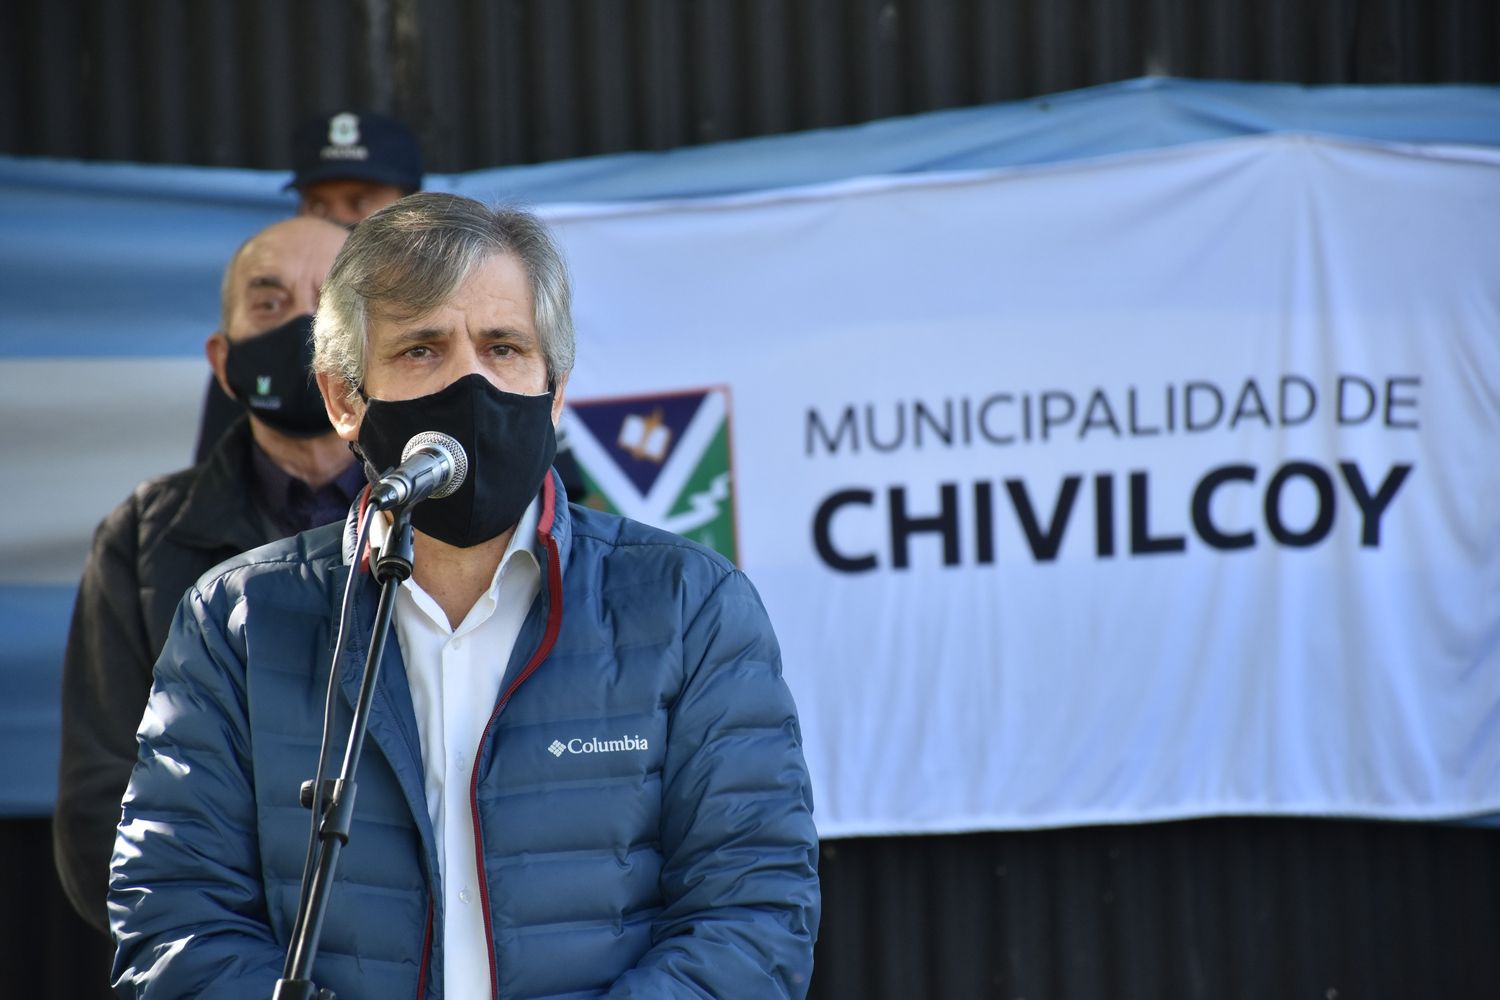 Chivilcoy: "Mañana se anunciarán medidas restrictivas de la Provincia”, afirmó el intendente